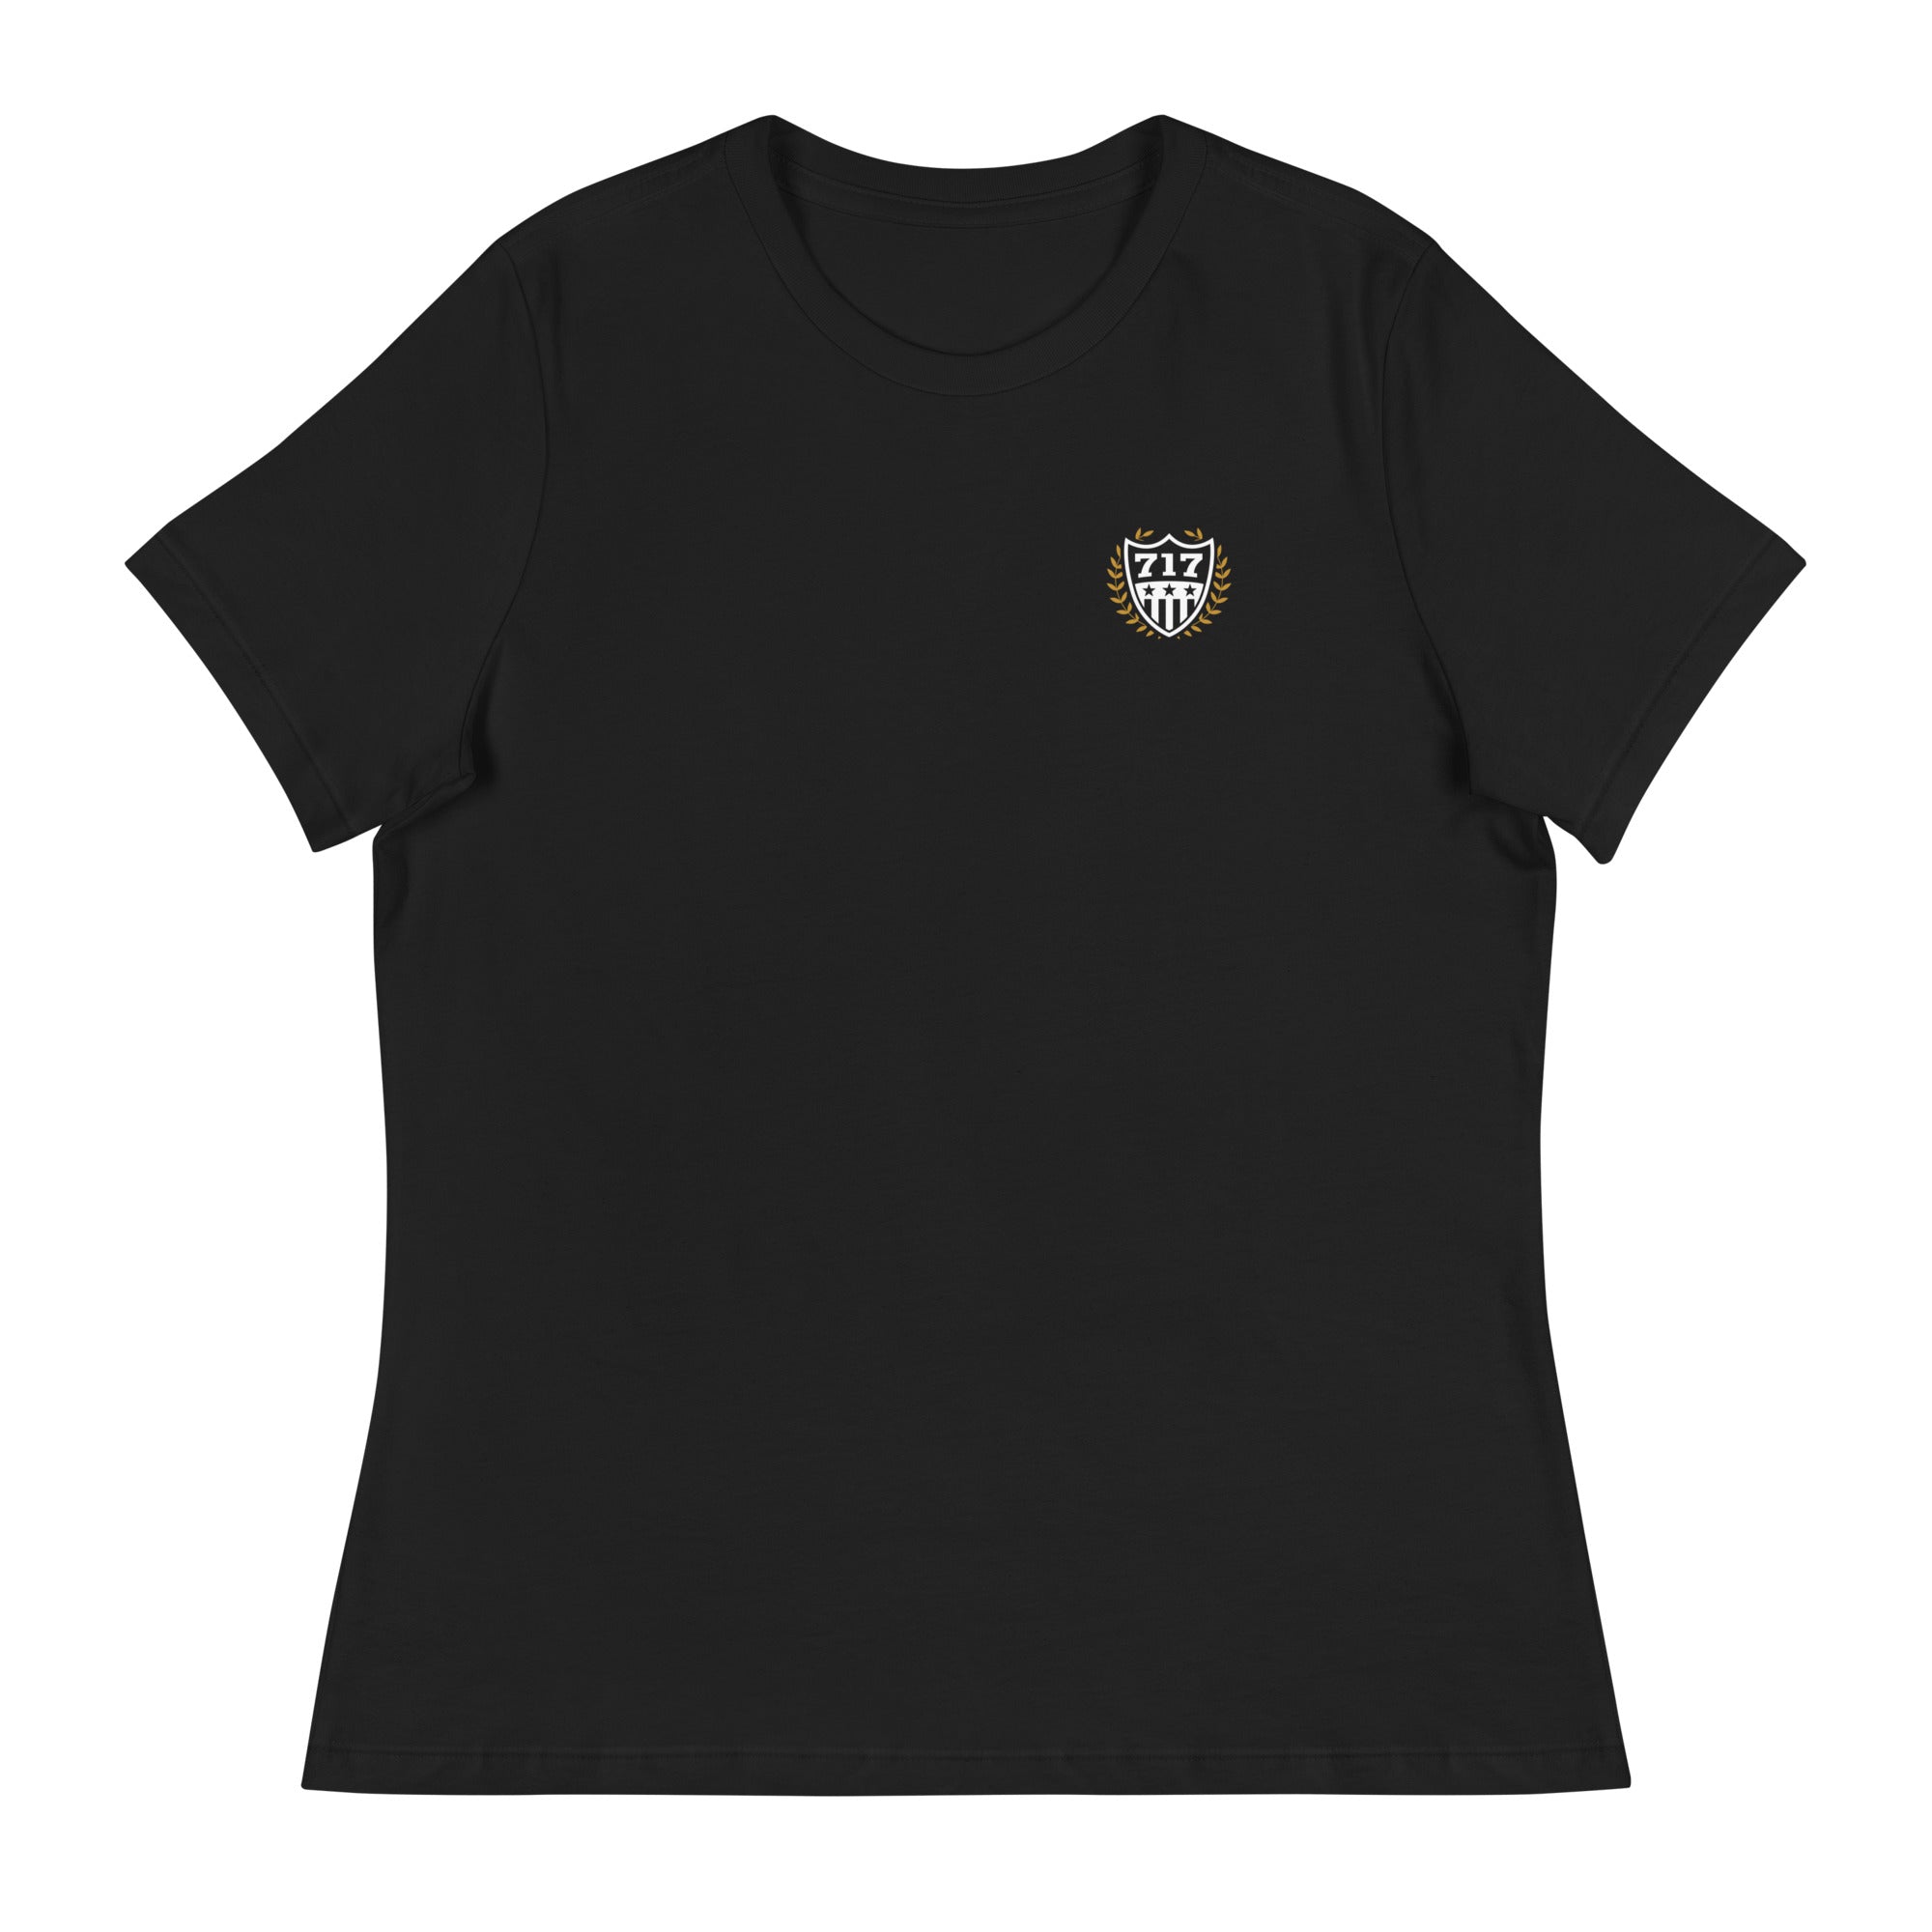 Women's 717 Crest Shirt